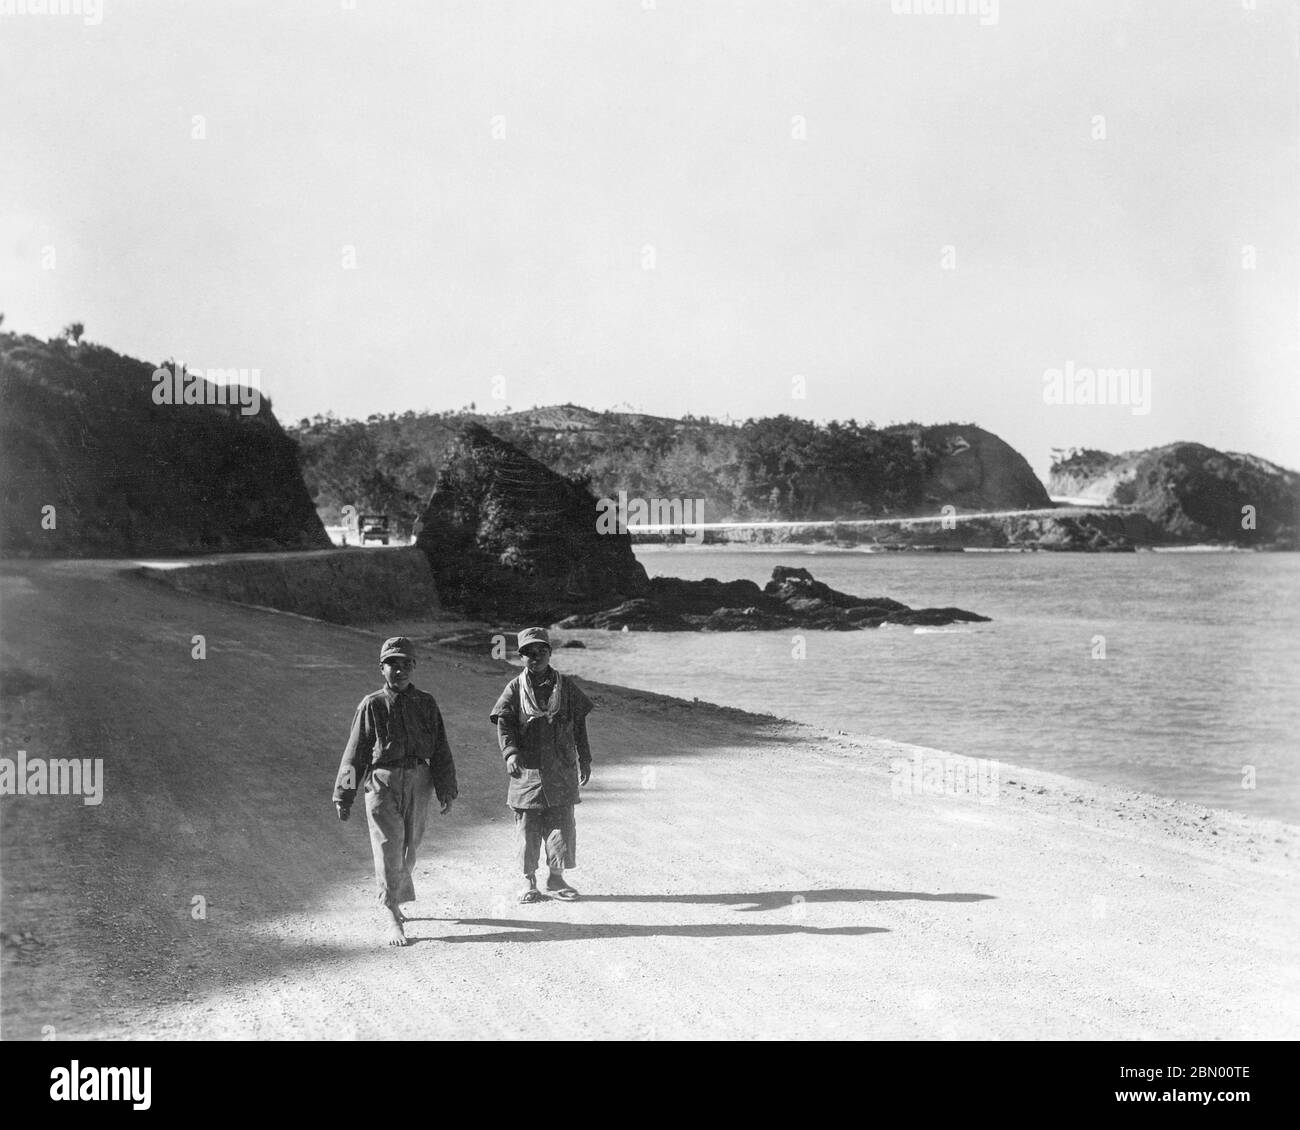 1946 Japon - garçons d'Okinawa ] — deux garçons d'Okinawa portant des  vêtements militaires excédentaires marchant sur la route I pendant  l'occupation américaine précoce d'Okinawa, 1946 (Showa 21). Dans le dos,